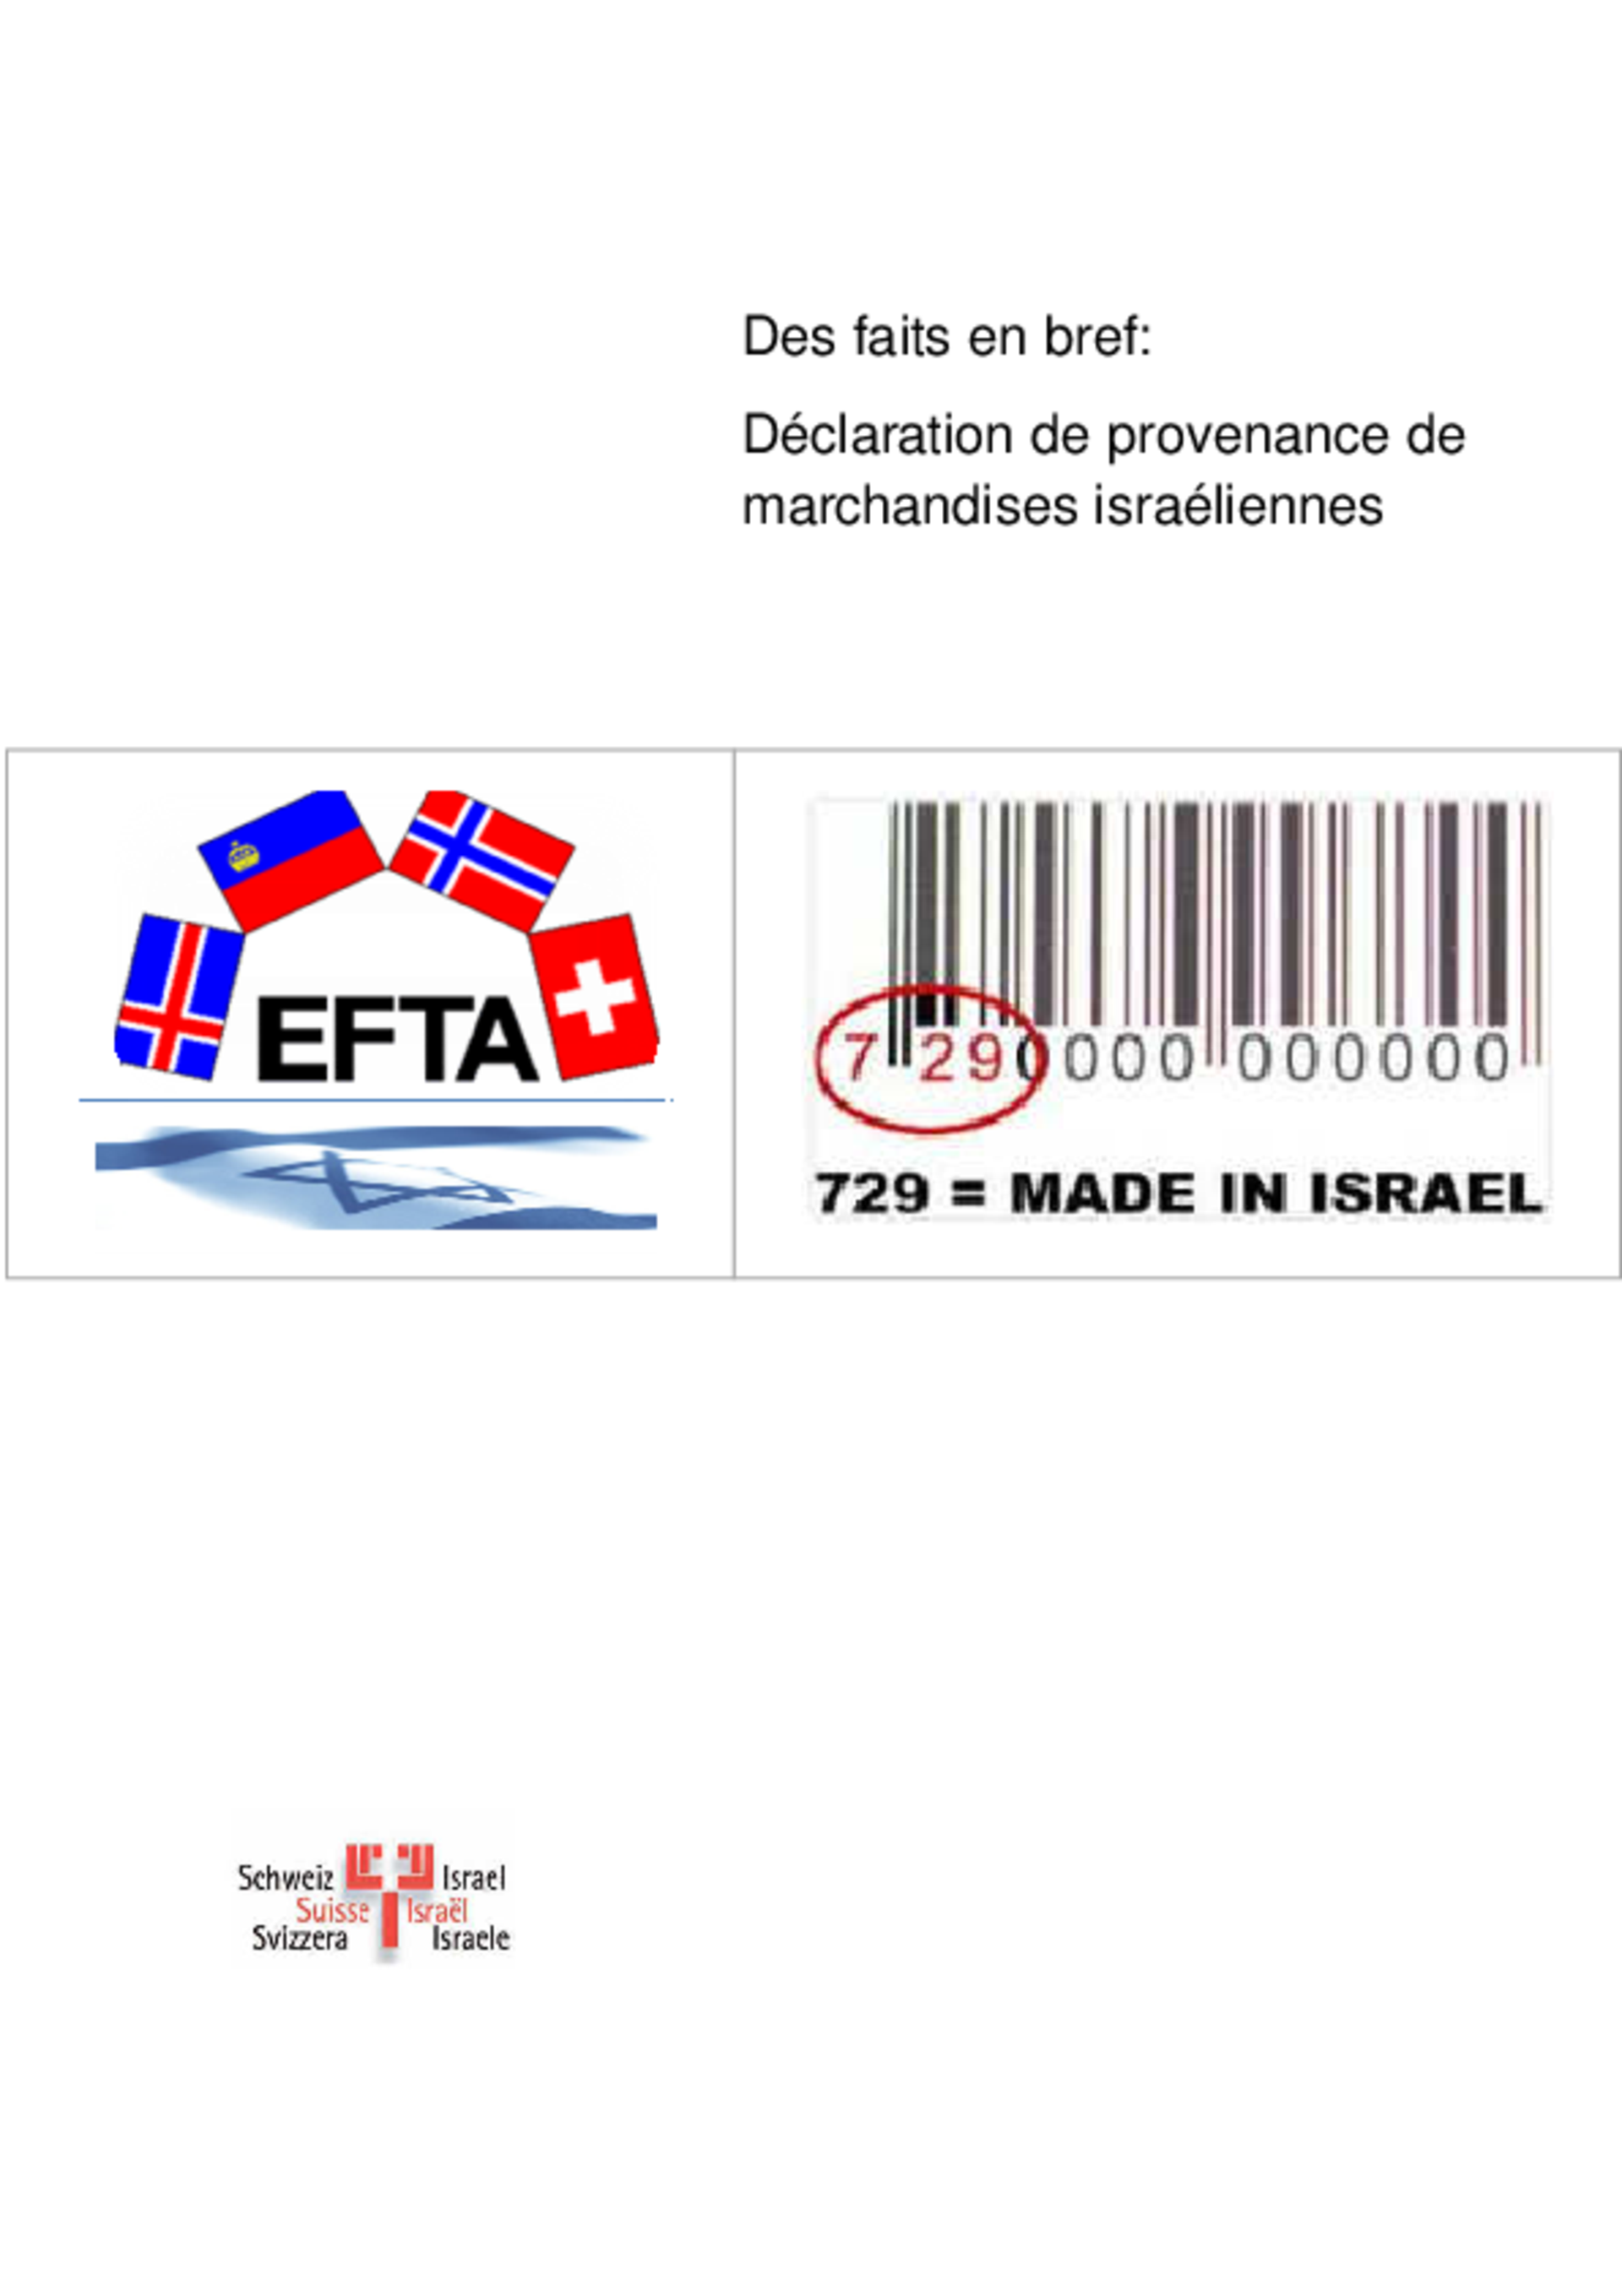 Les faits en bref: Déclaration de provenance de marchandises israéliennes (2011)